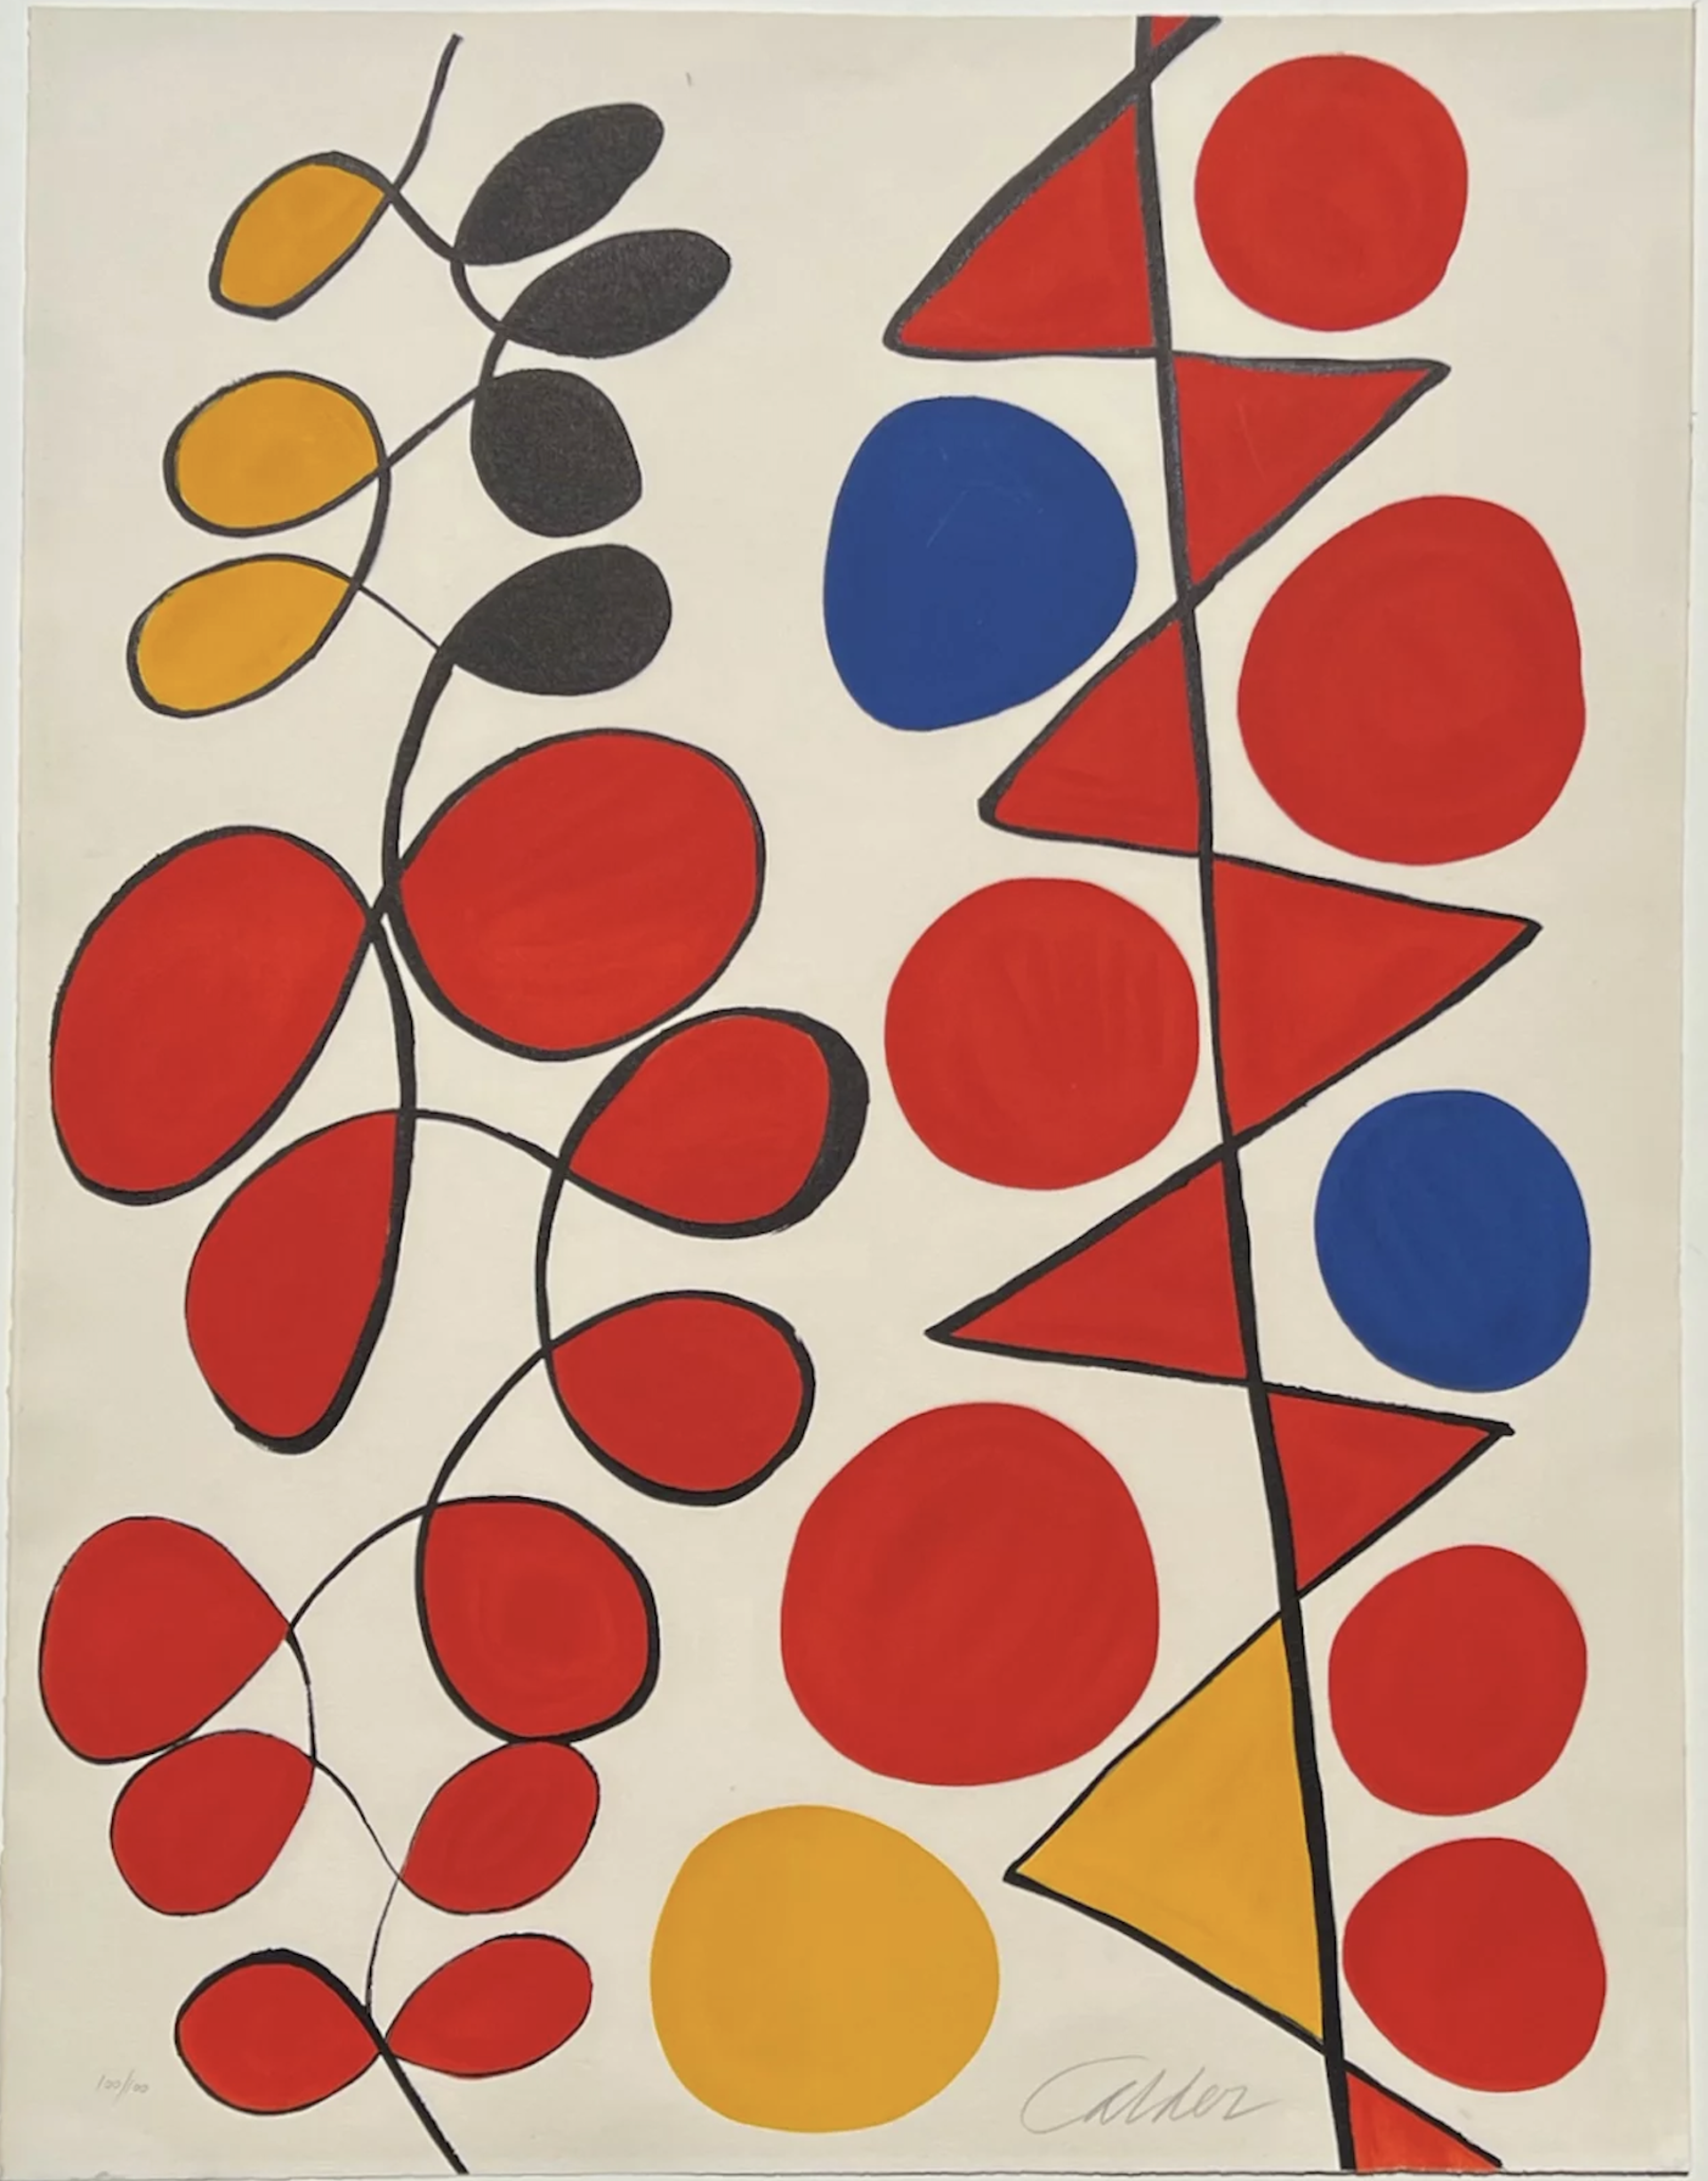 Vertical Flags by Alexander Calder